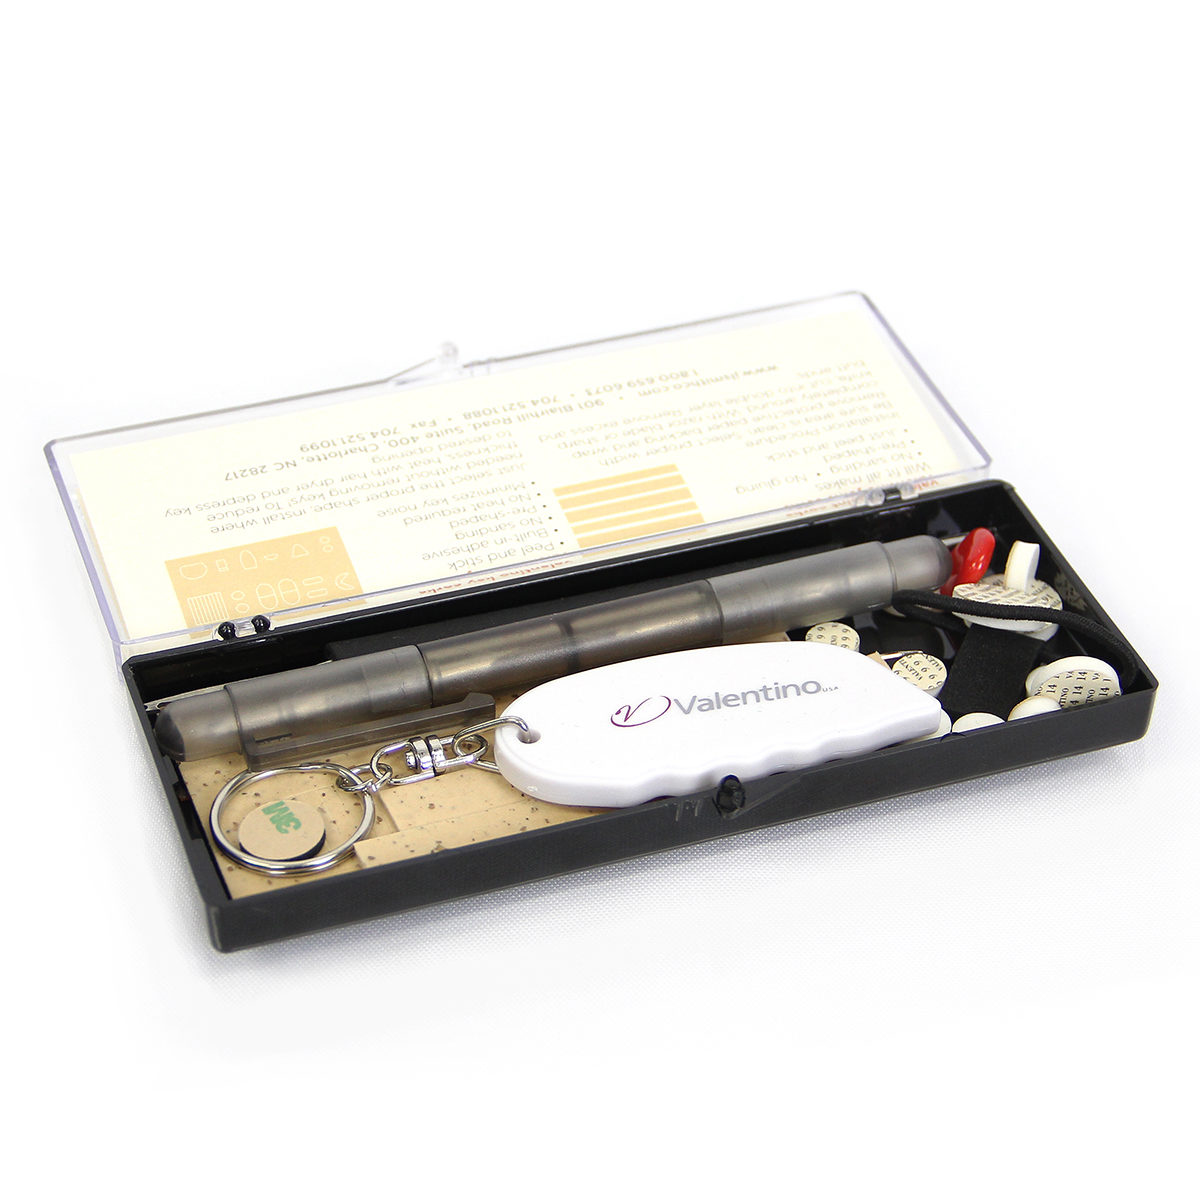 valentino emergency clarinet repair kit 2